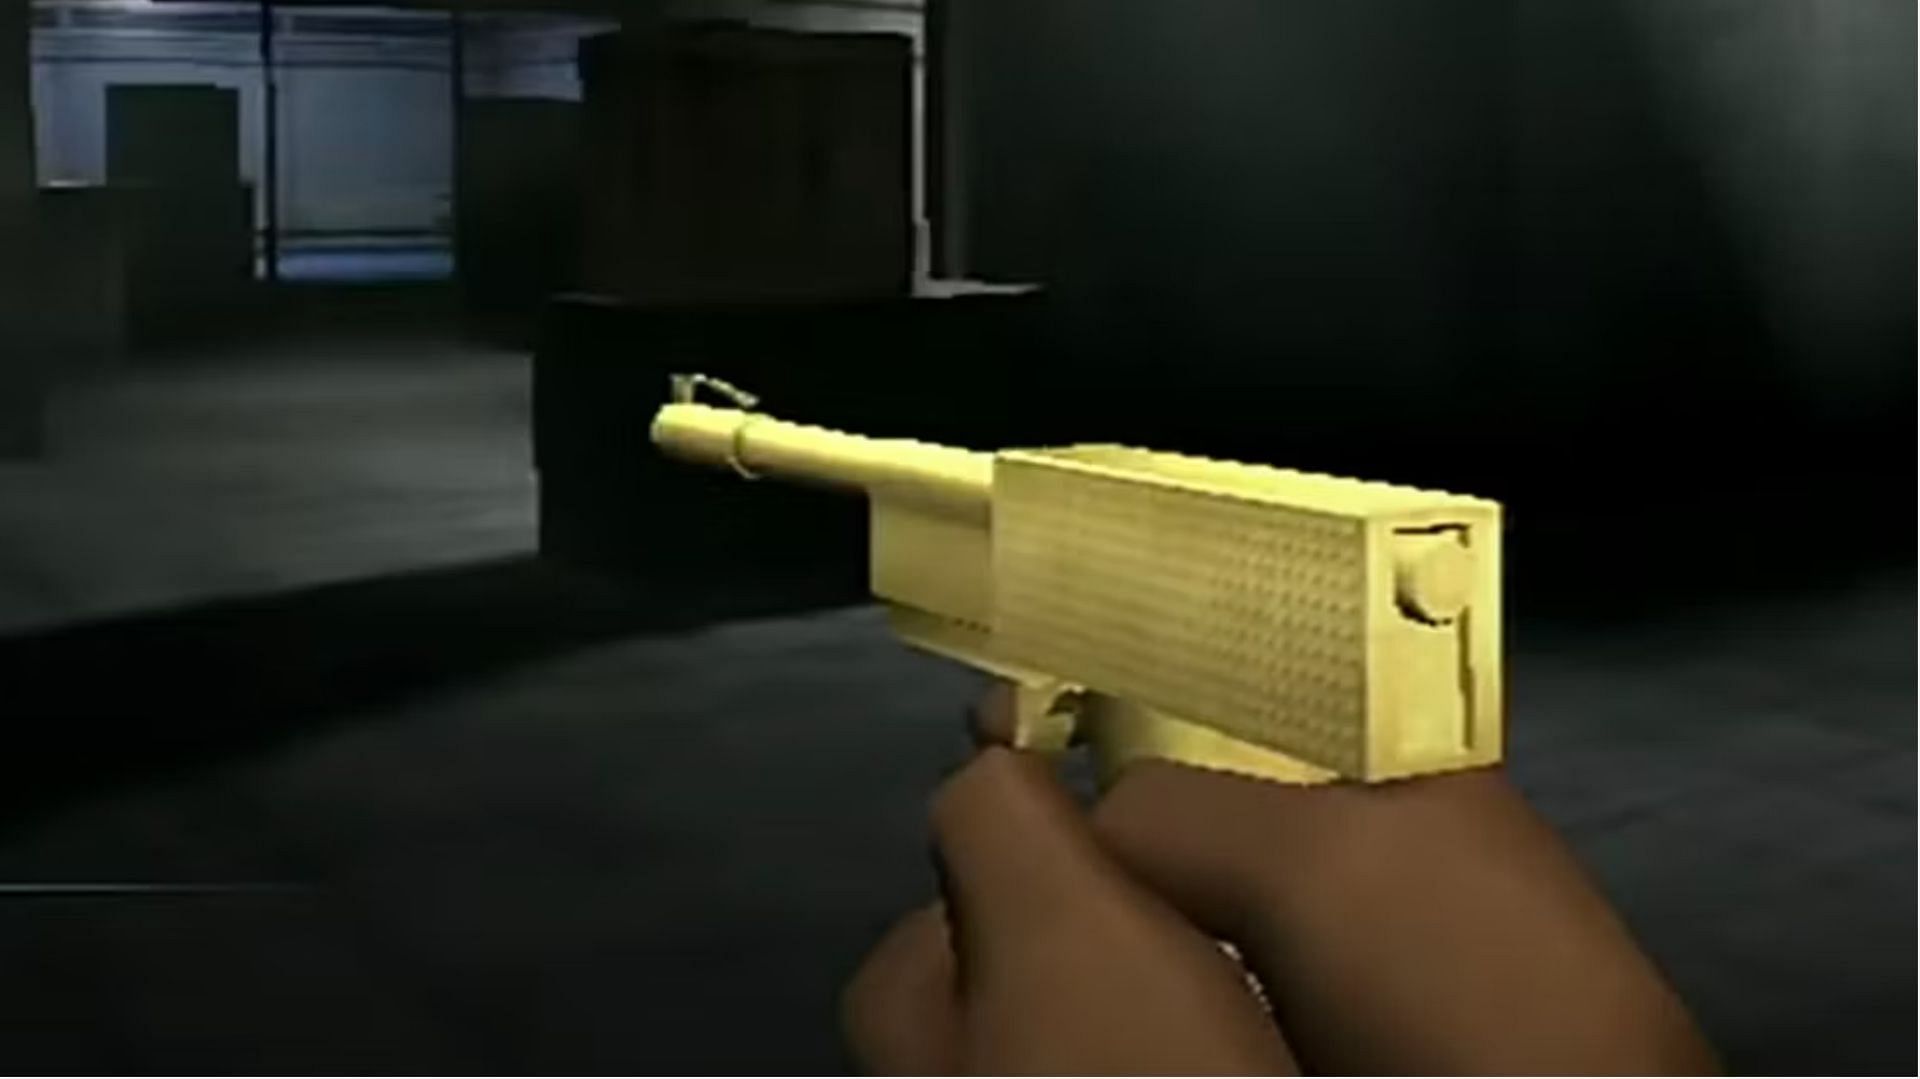 The Golden Gun (Image via Nintendo)